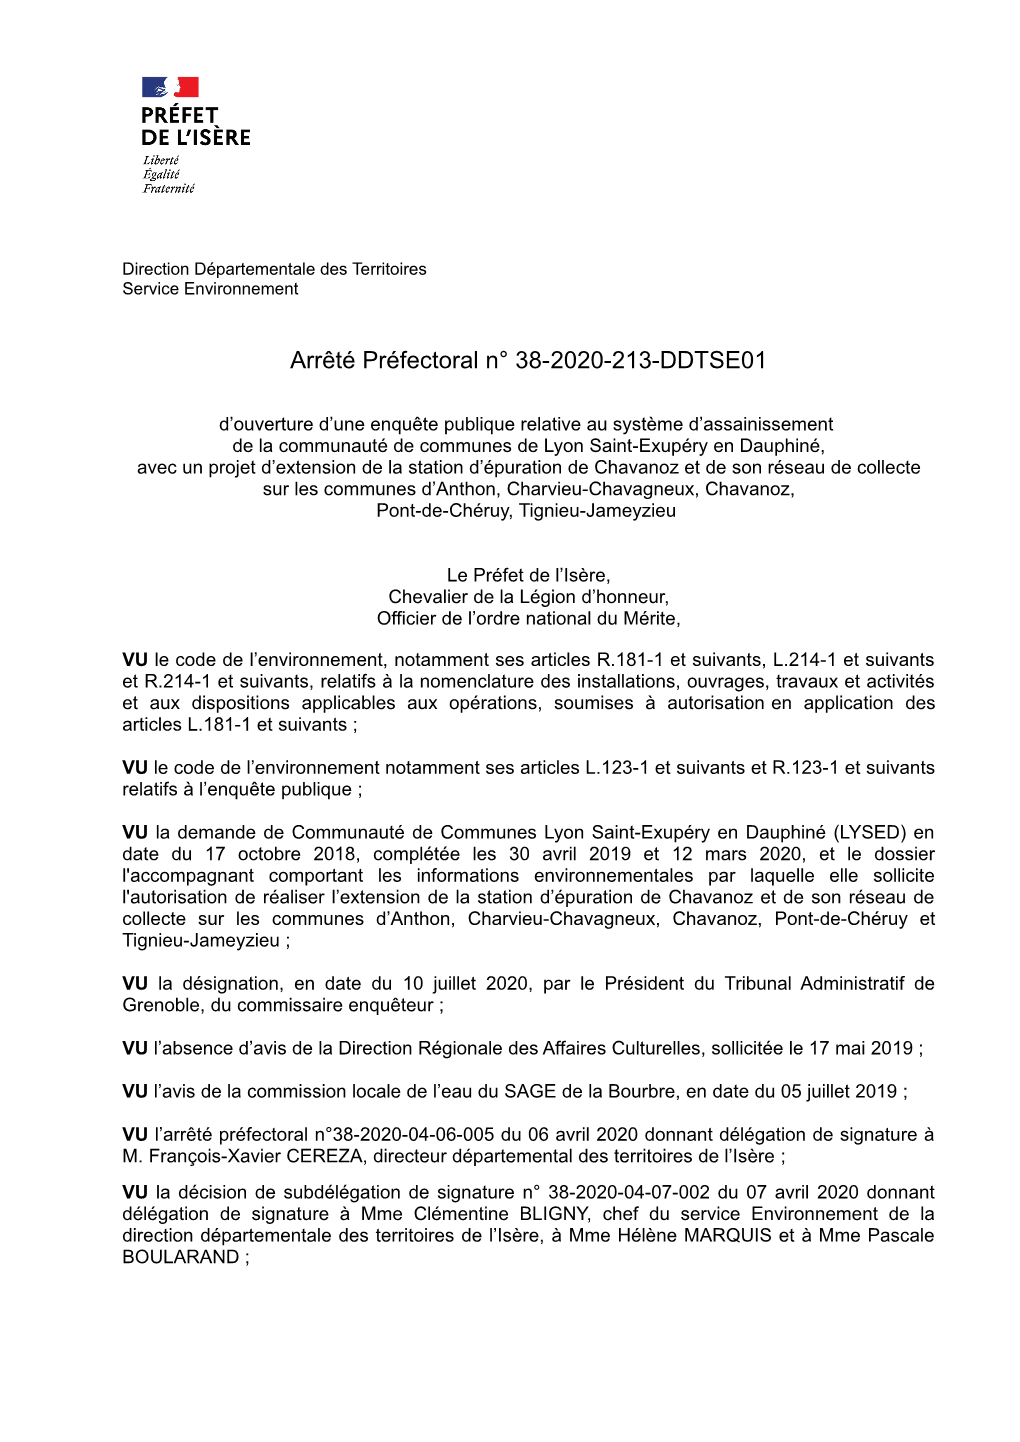 Arrêté Préfectoral N° 38-2020-213-DDTSE01